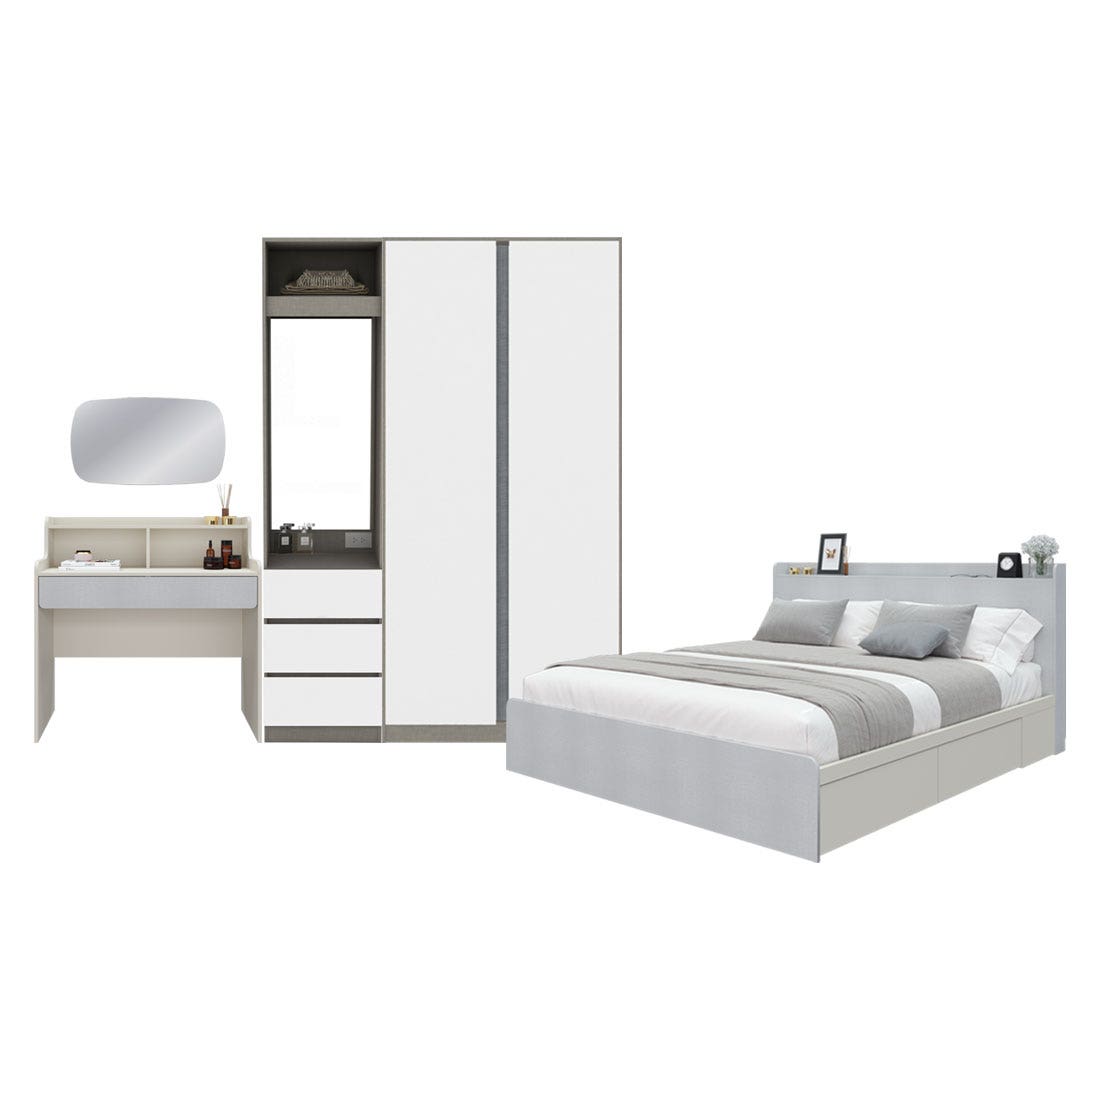 ชุดห้องนอน 5 ฟุต & ตู้ Blox 150 ซม. & โต๊ะเครื่องแป้ง รุ่น Aiko สีขาว 02